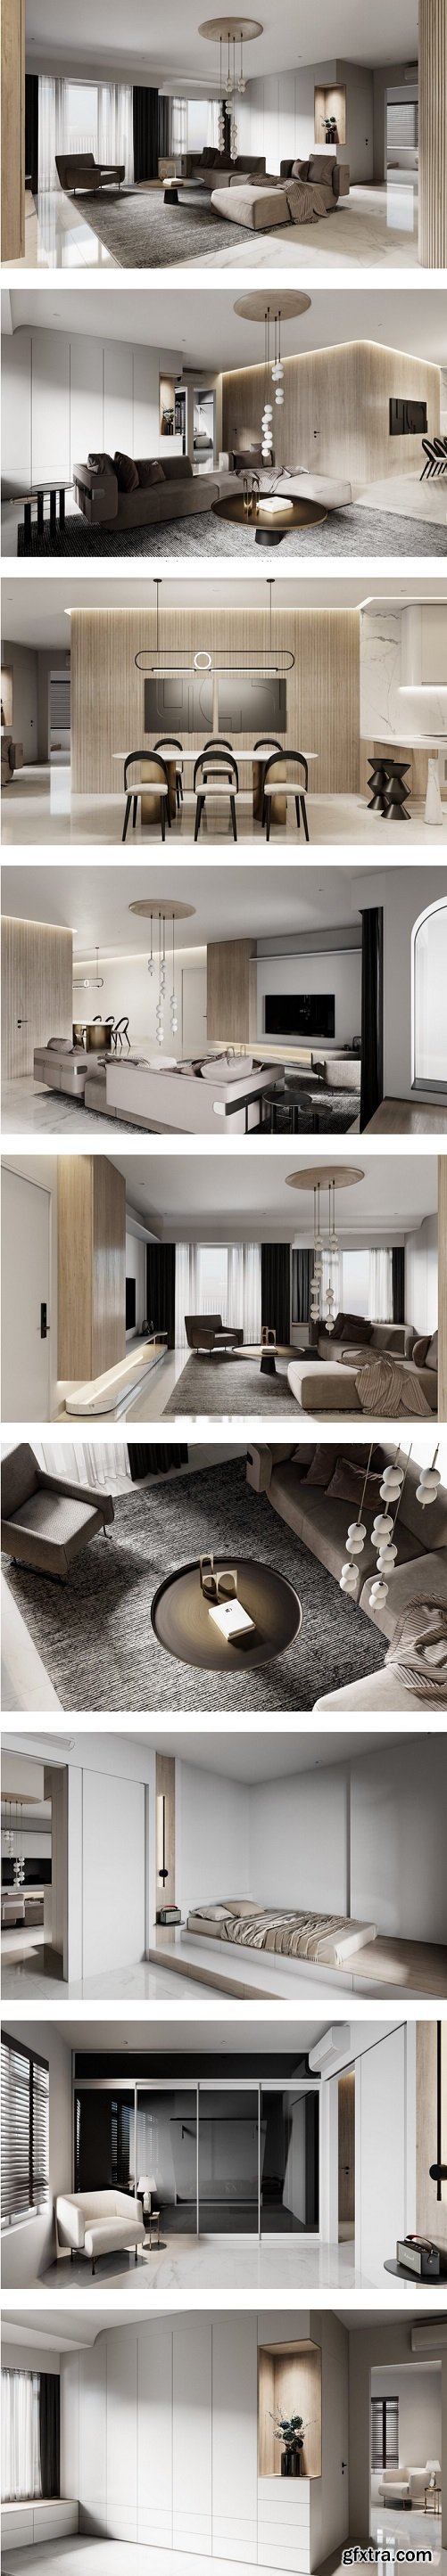 Apartment Interior by Trung Hau Tran